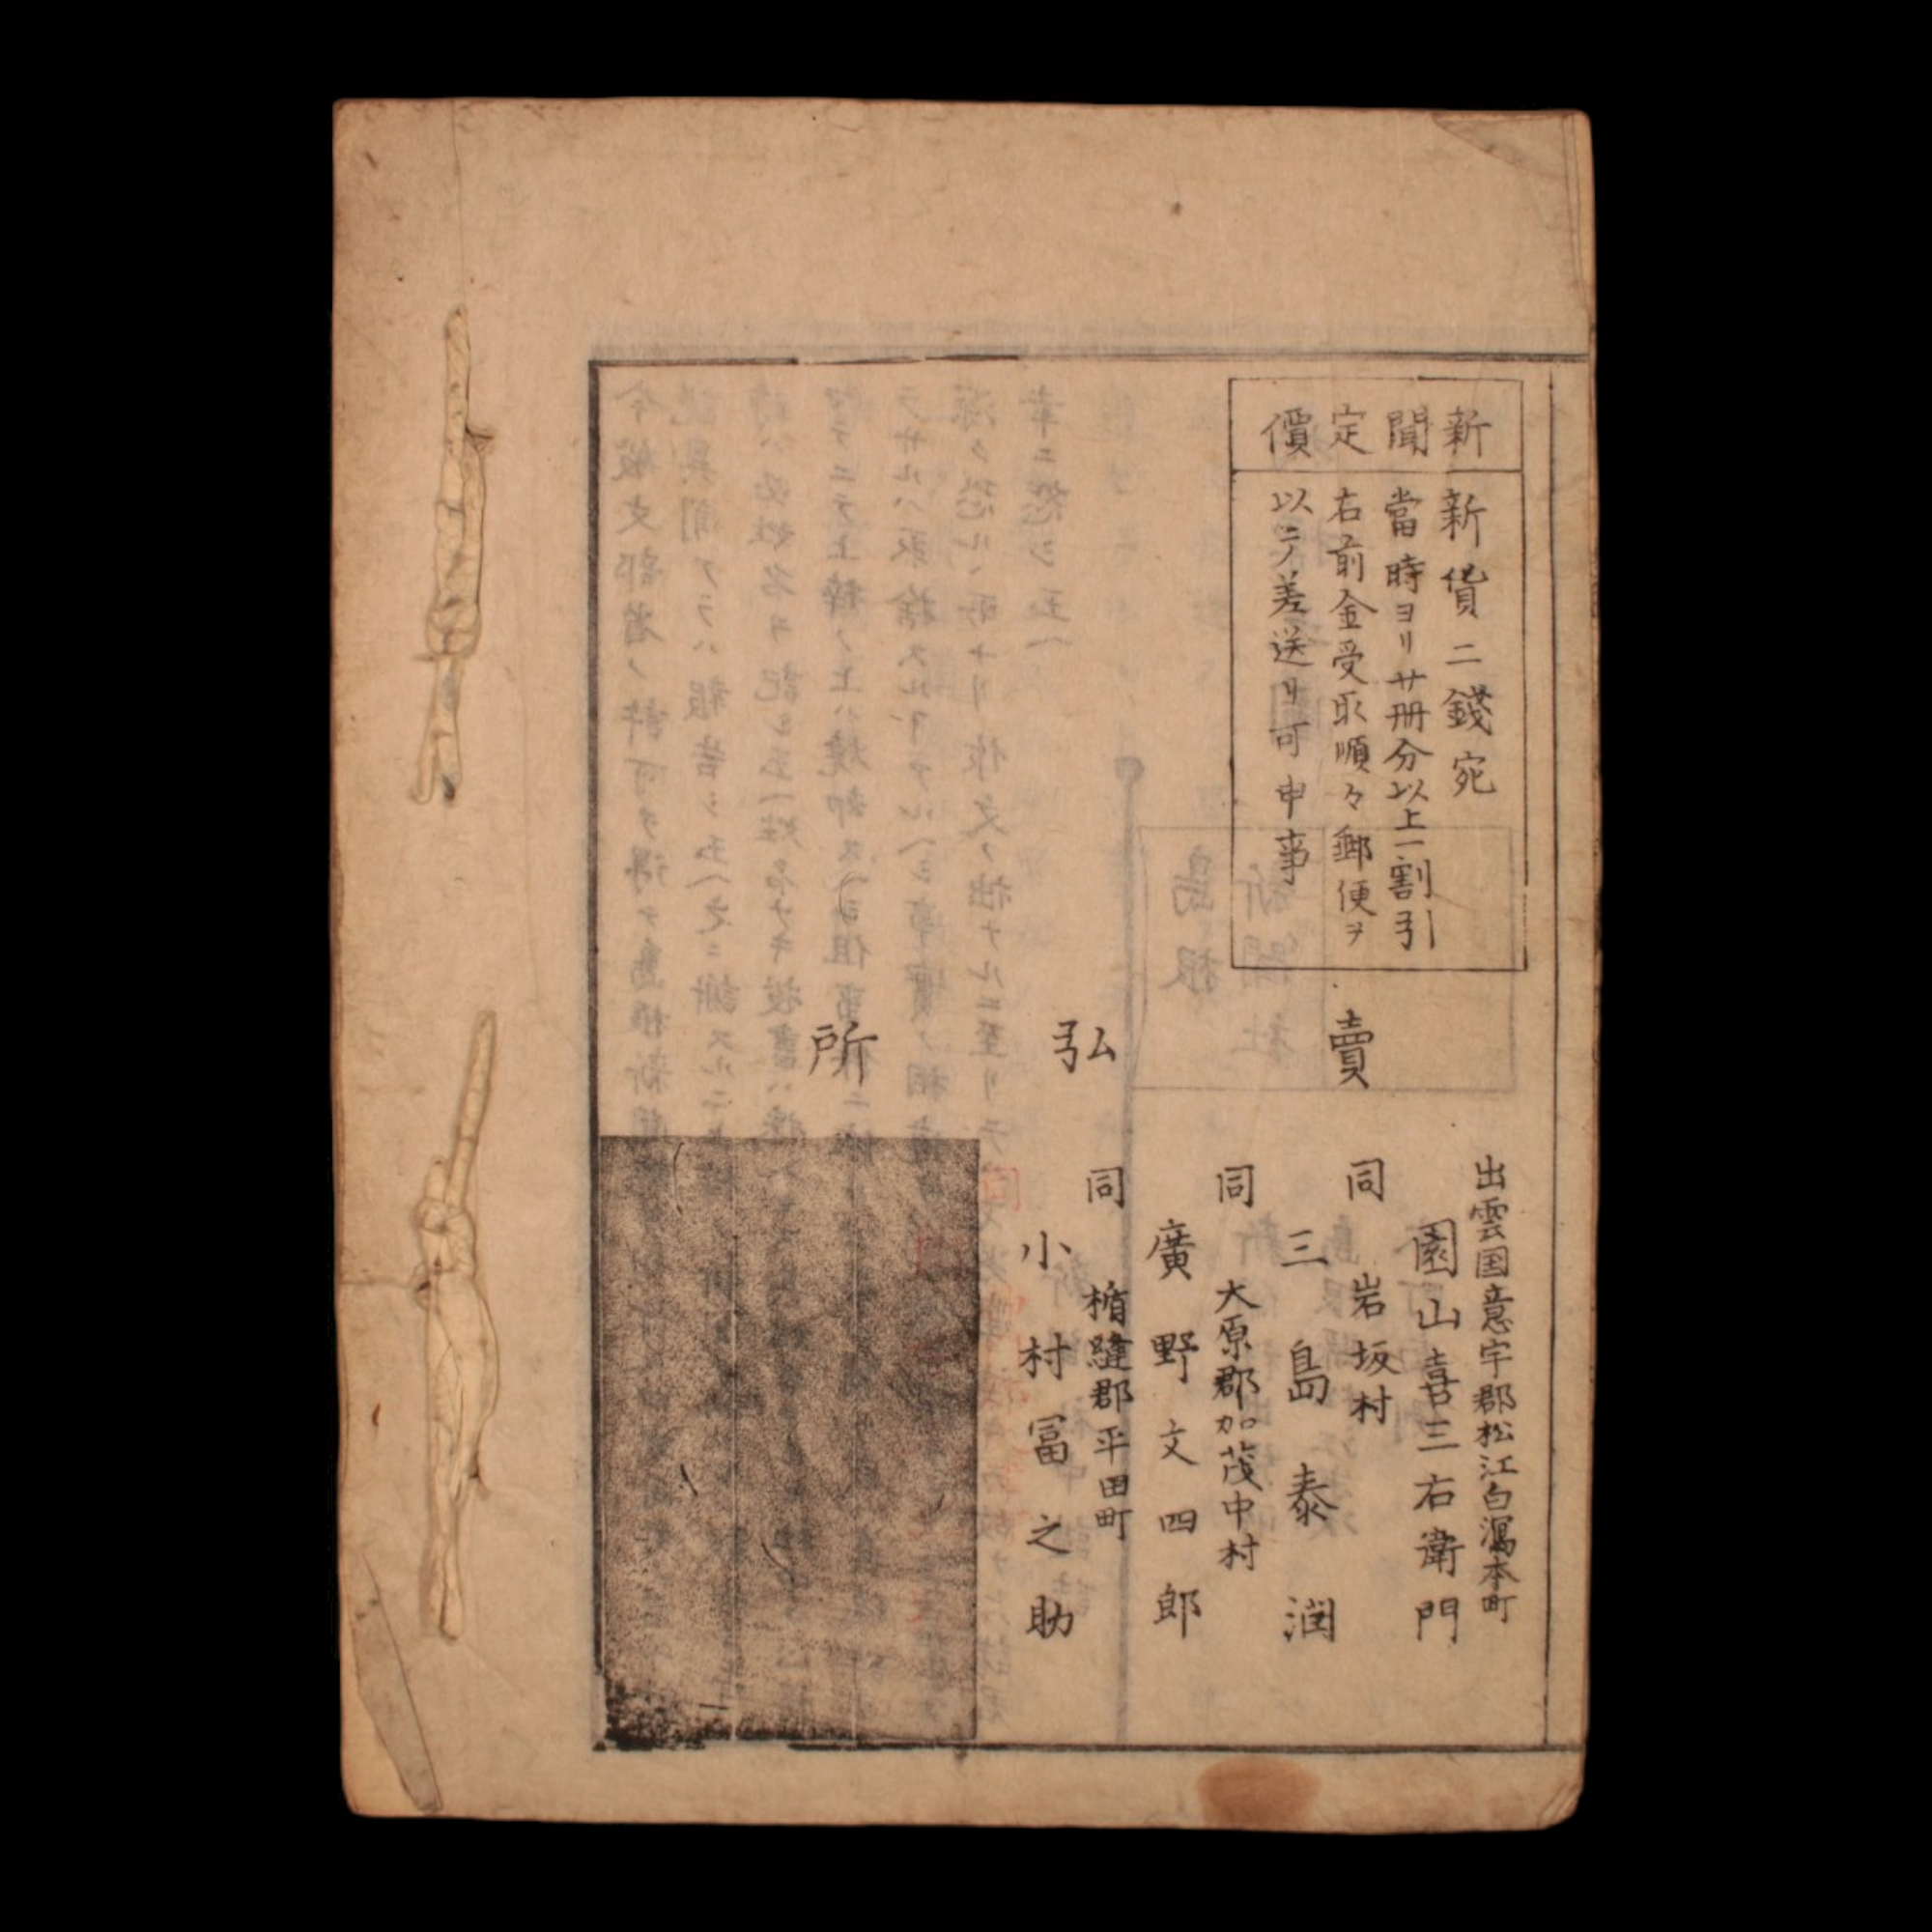 Shimane Newspaper, Issue 1 - Meiji 6 (1873) - Meiji Era Japan